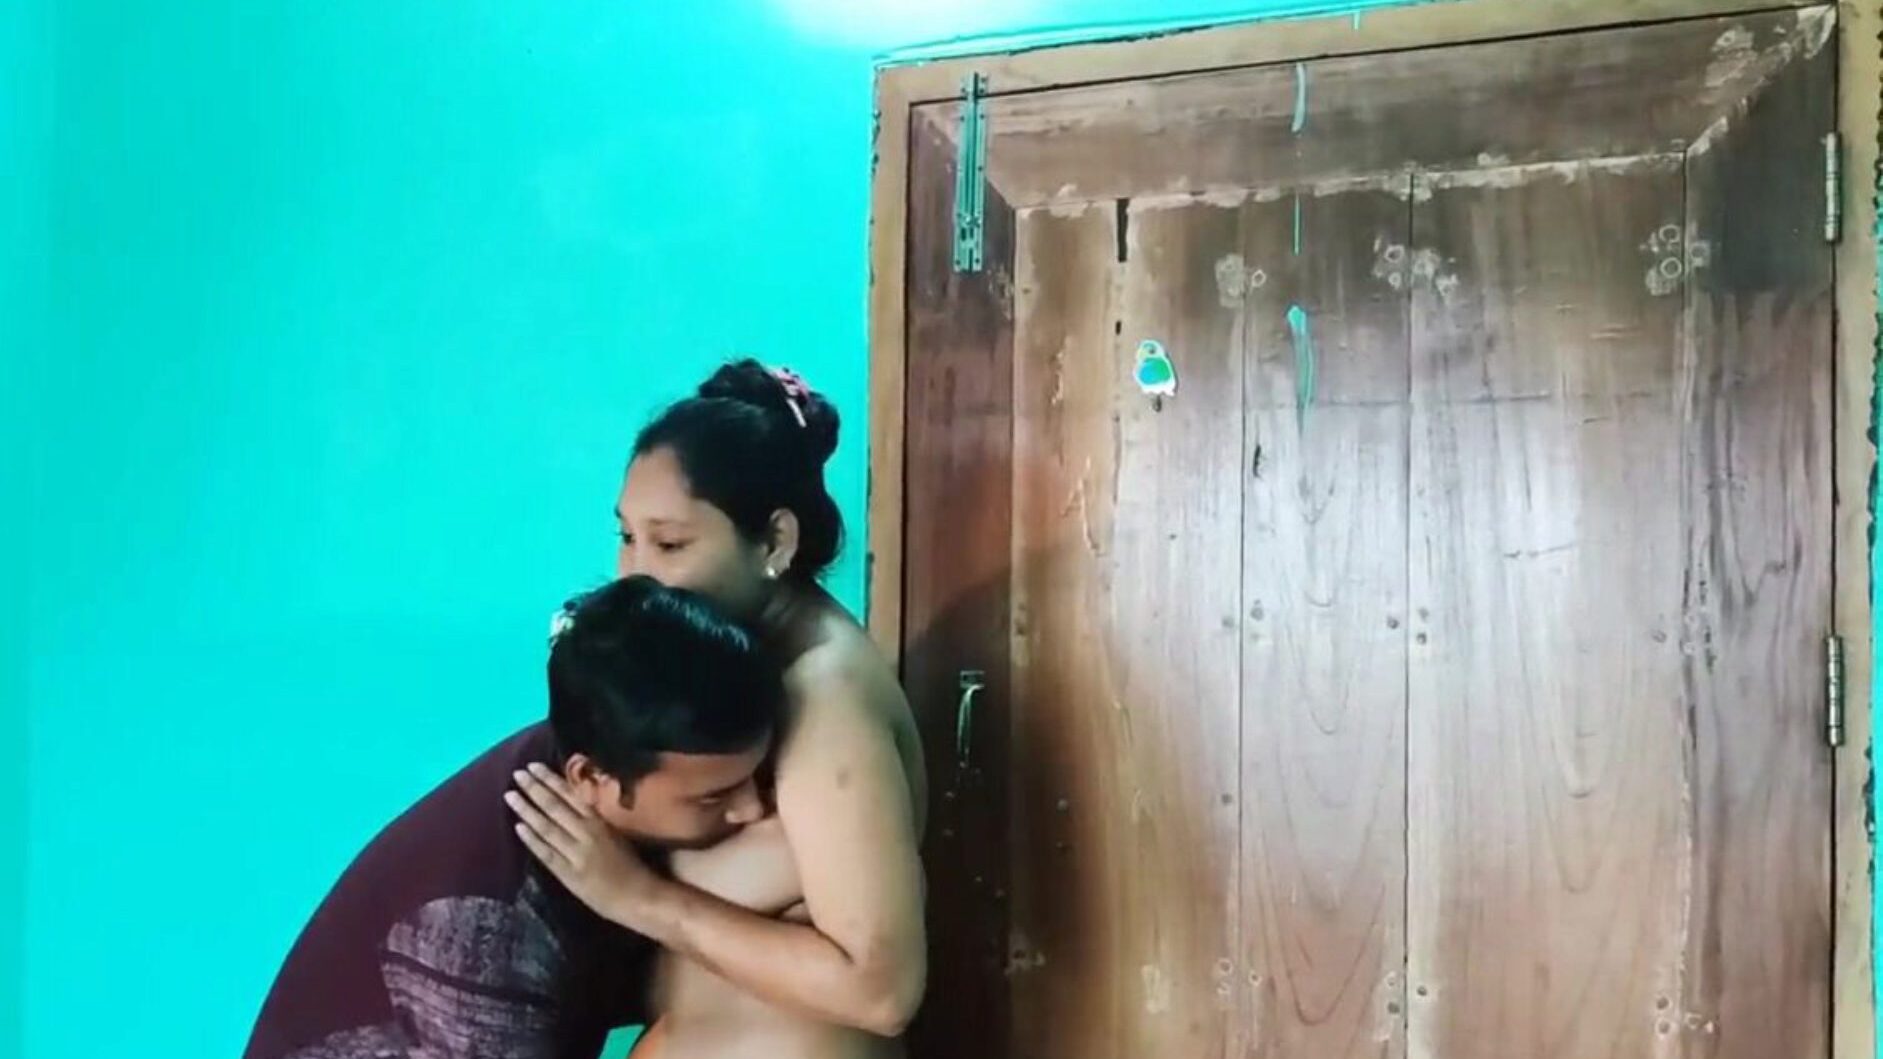 desi bengalce seks videosu çıplak, bedava asyalı porno 6c: xhamster xhamster'da desi bengali seks videosu çıplak bölüm izle, en şişman hd fuck-fest tüp web kaynağı, tonlarca bedava asyalı xxn seks ve anal pornografi vids